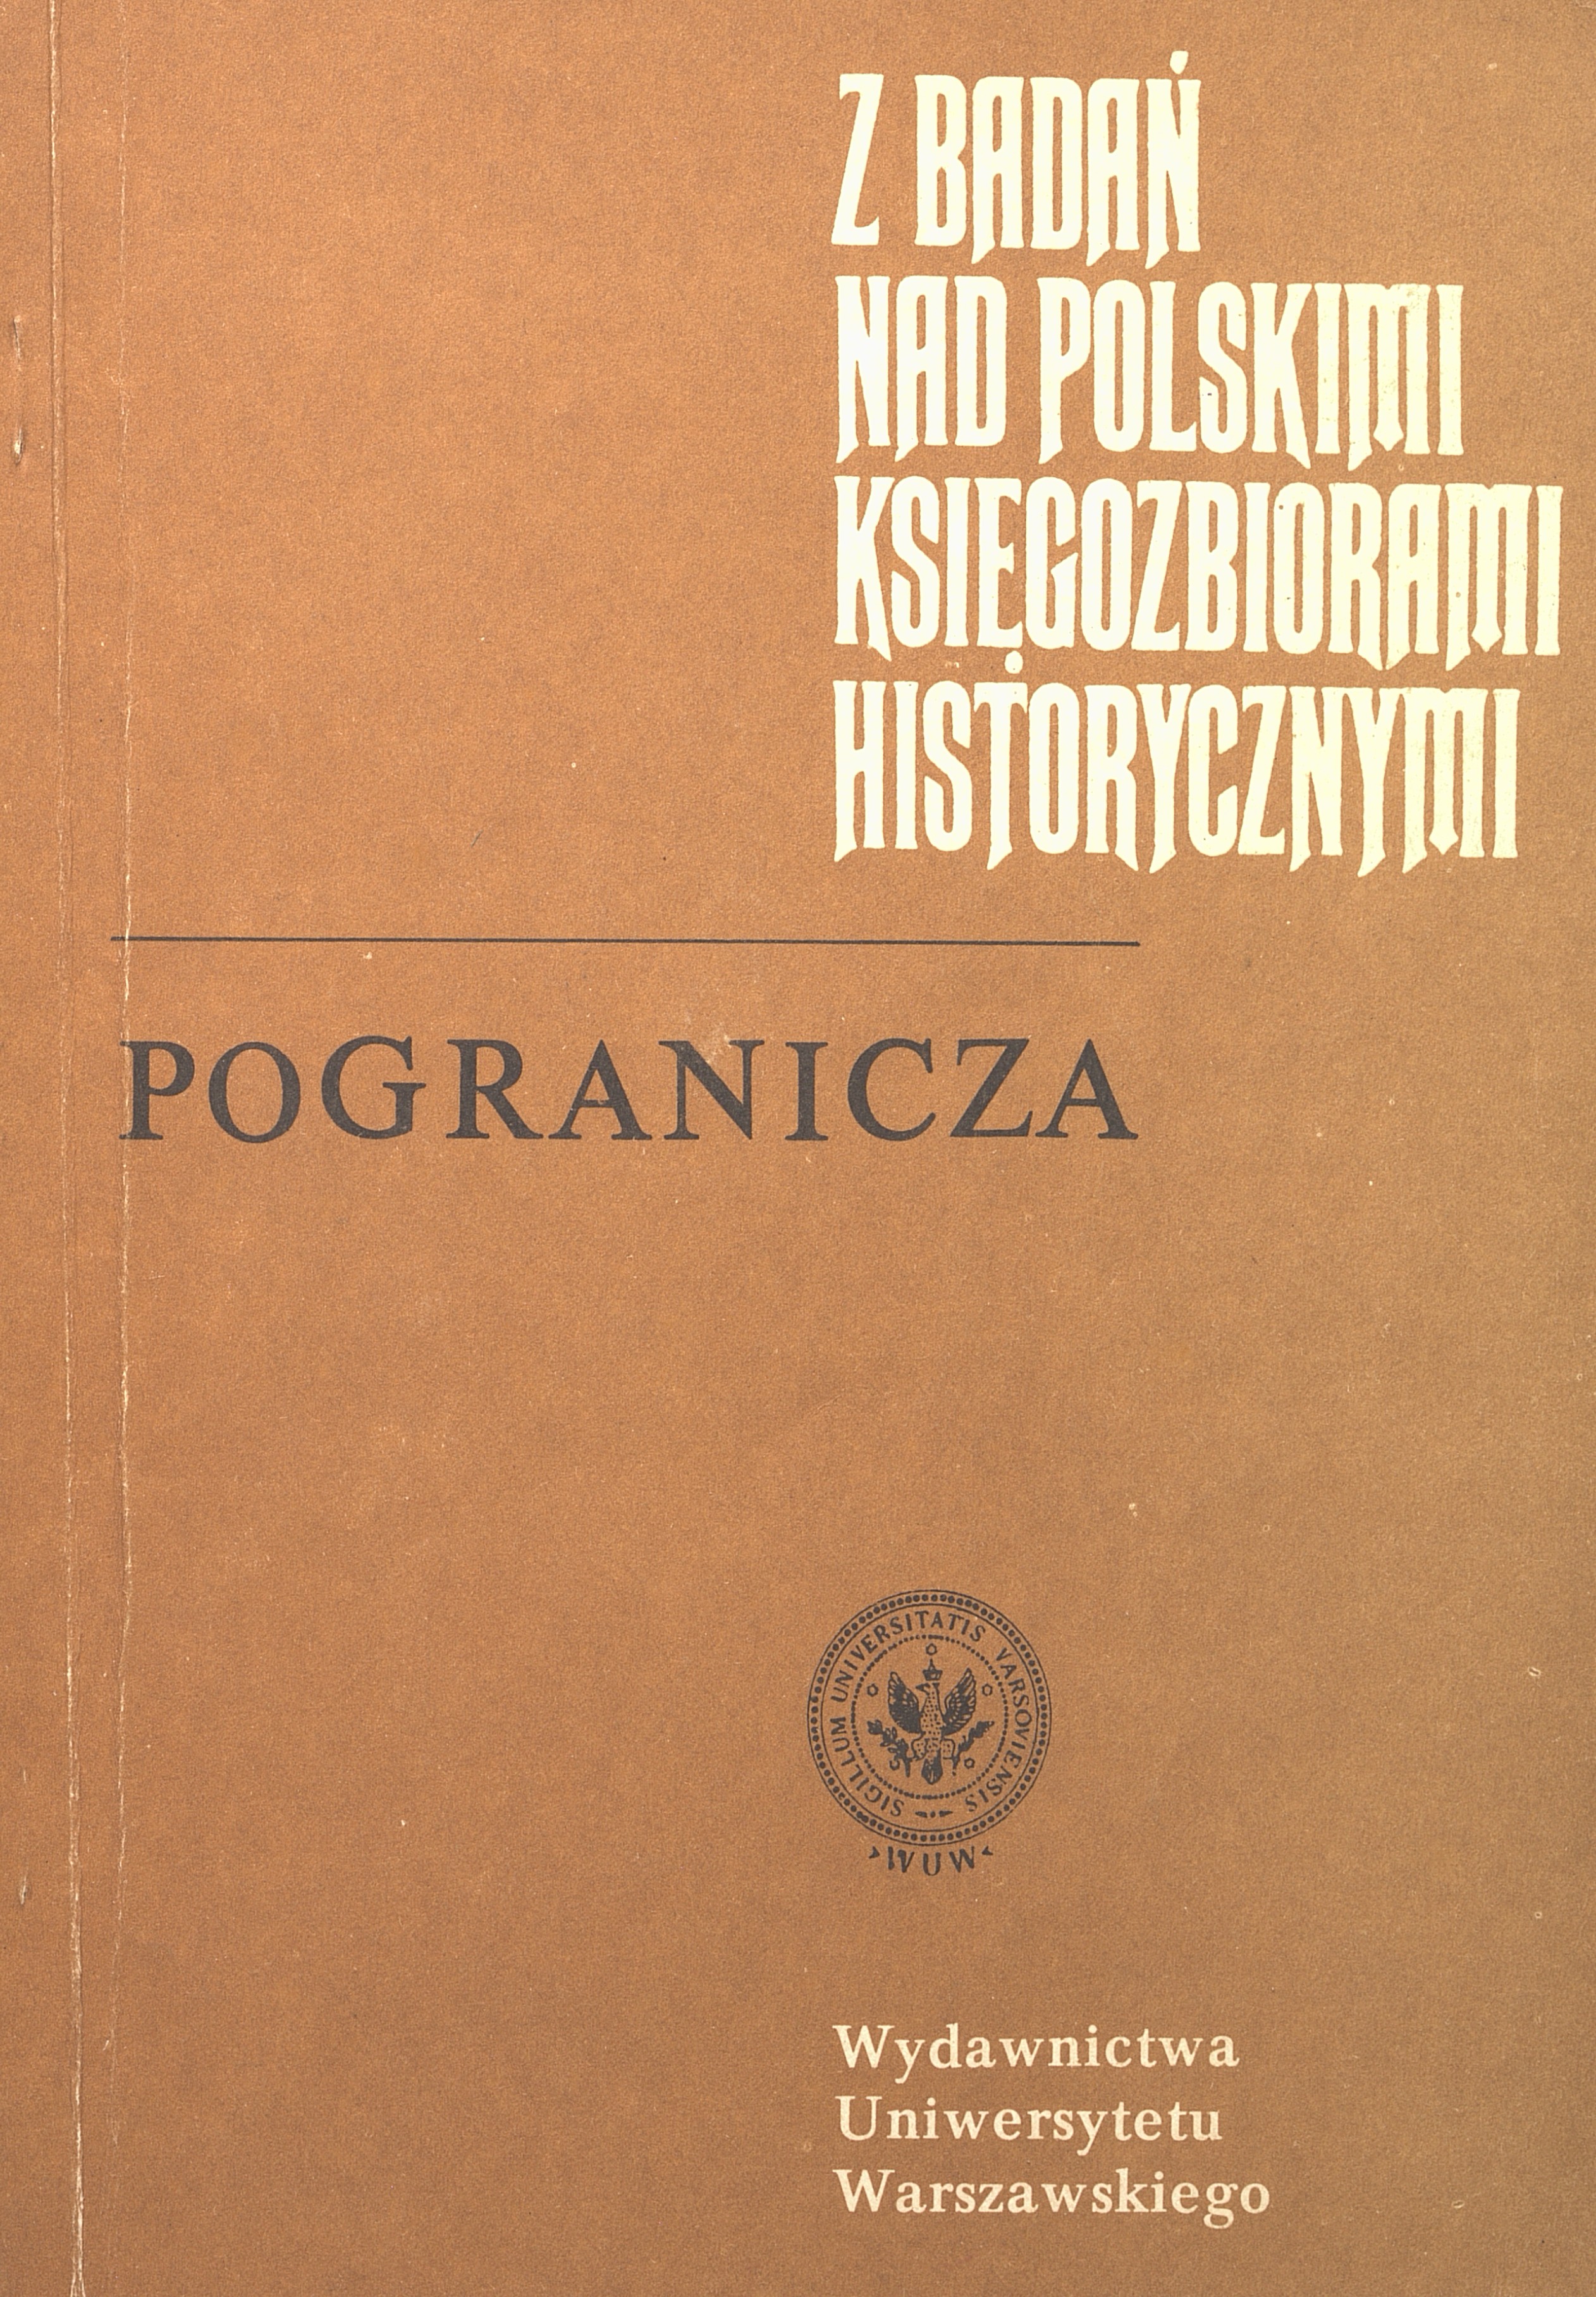 					Pokaż  1991: Z Badań nad Polskimi Księgozbiorami Historycznymi - Zeszyt 11
				